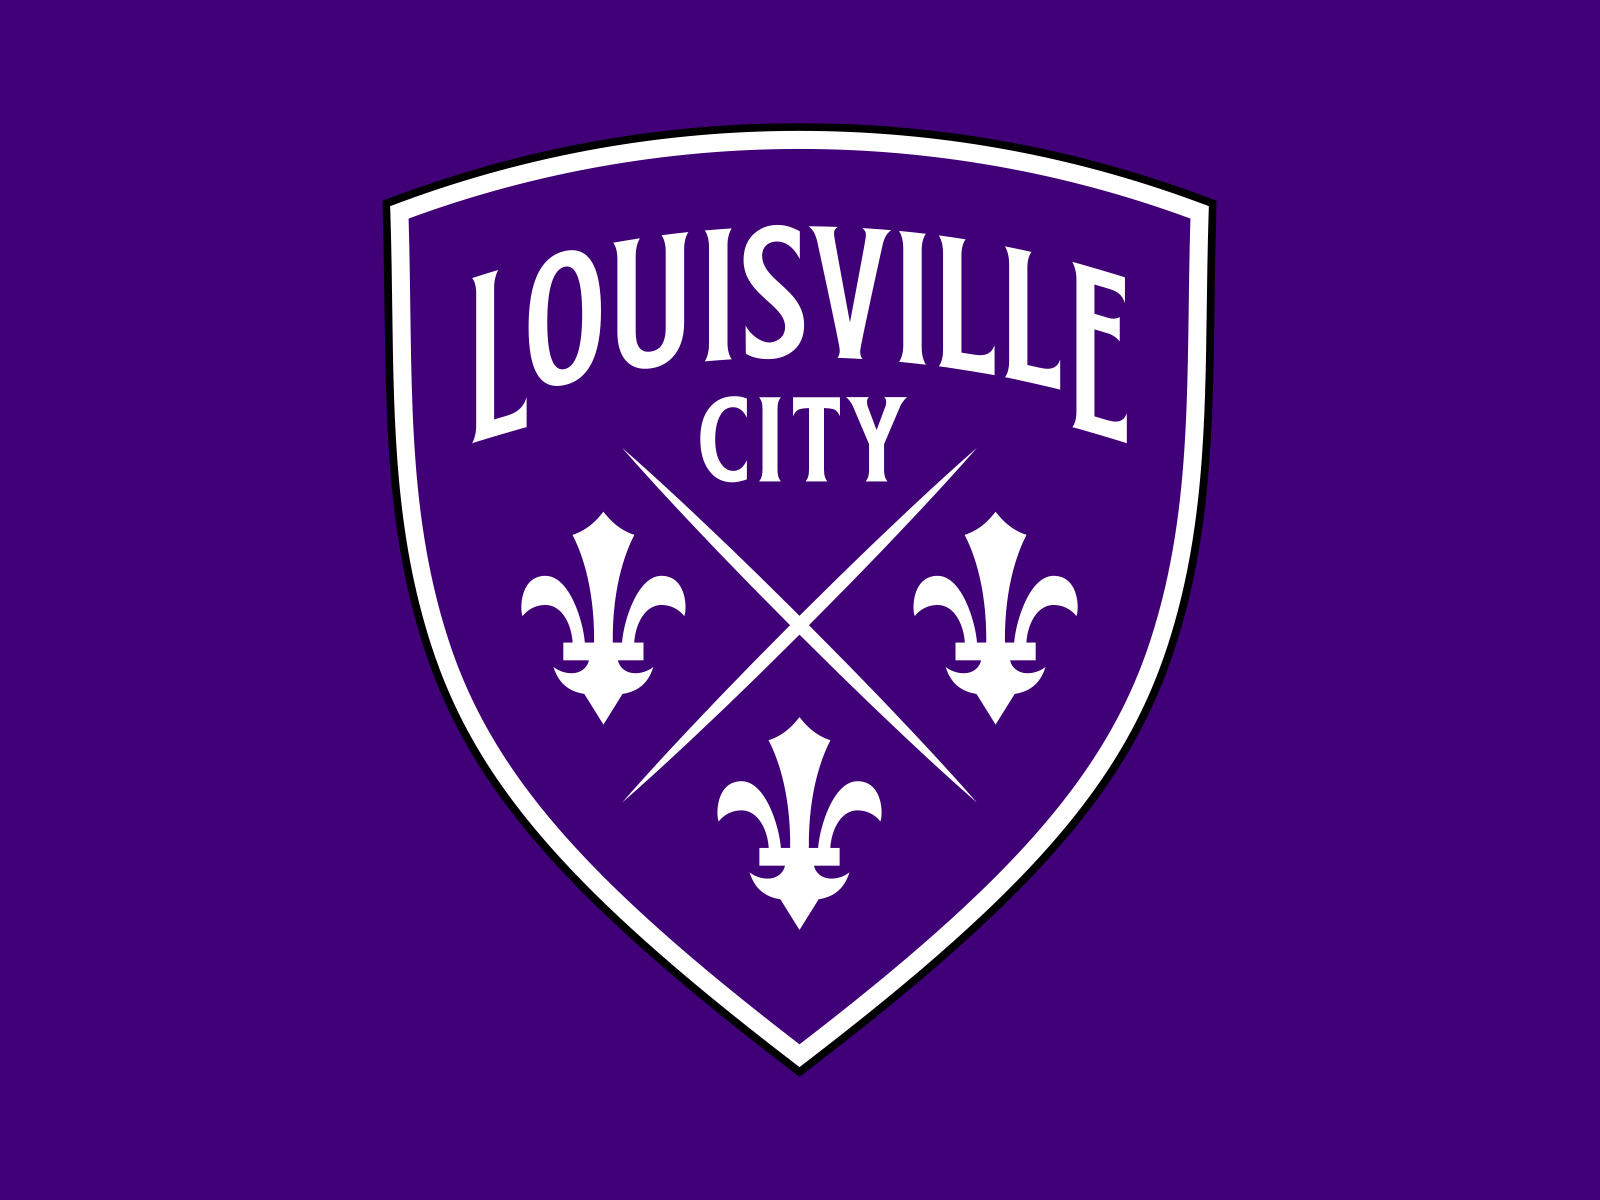 Louisville City FC by Matthew Wolff on Dribbble